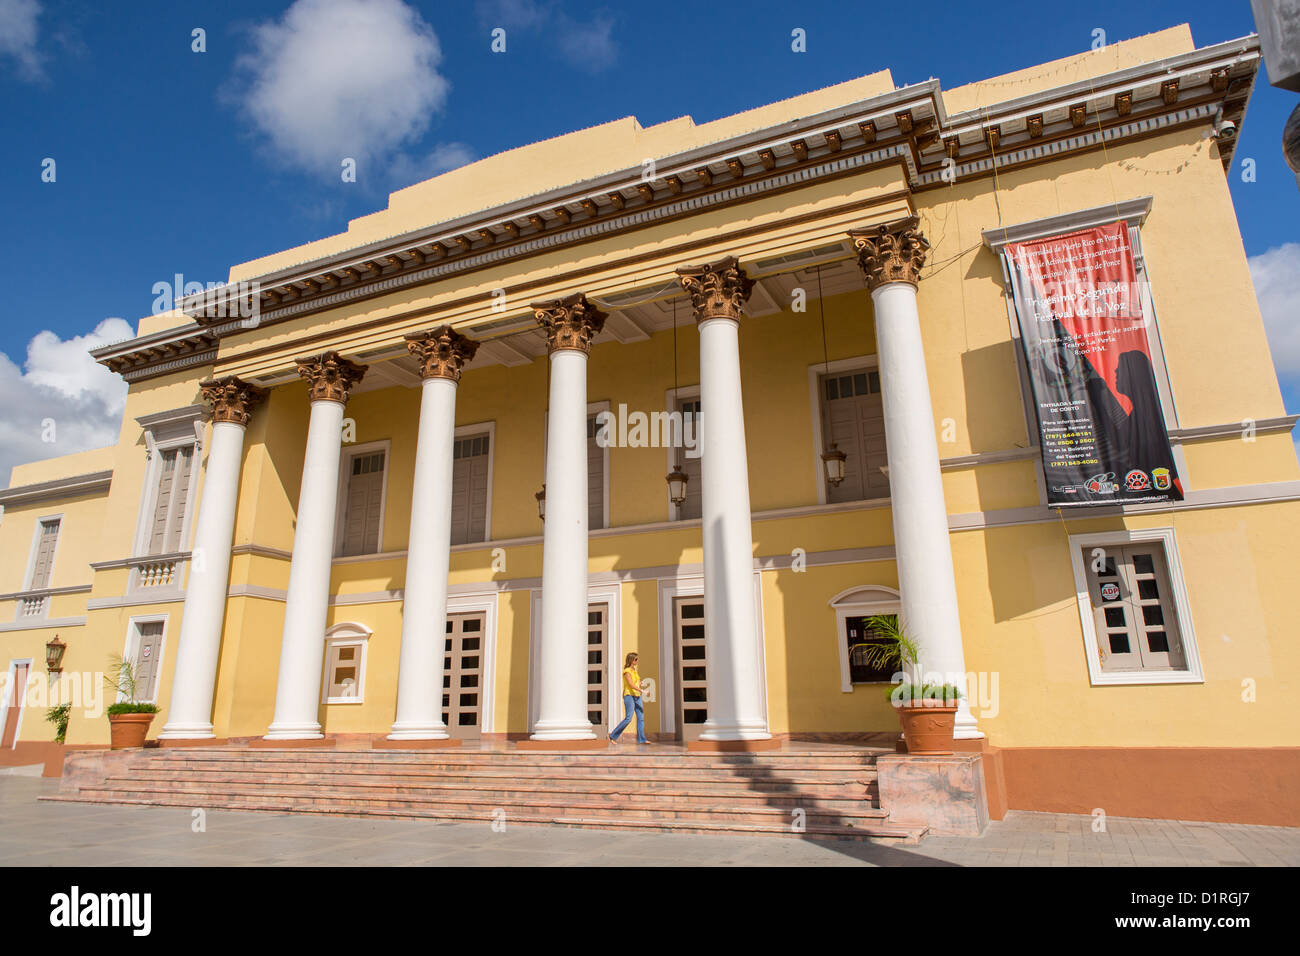 PONCE, PUERTO RICO - Teatro La Perla, historic theatre. Stock Photo